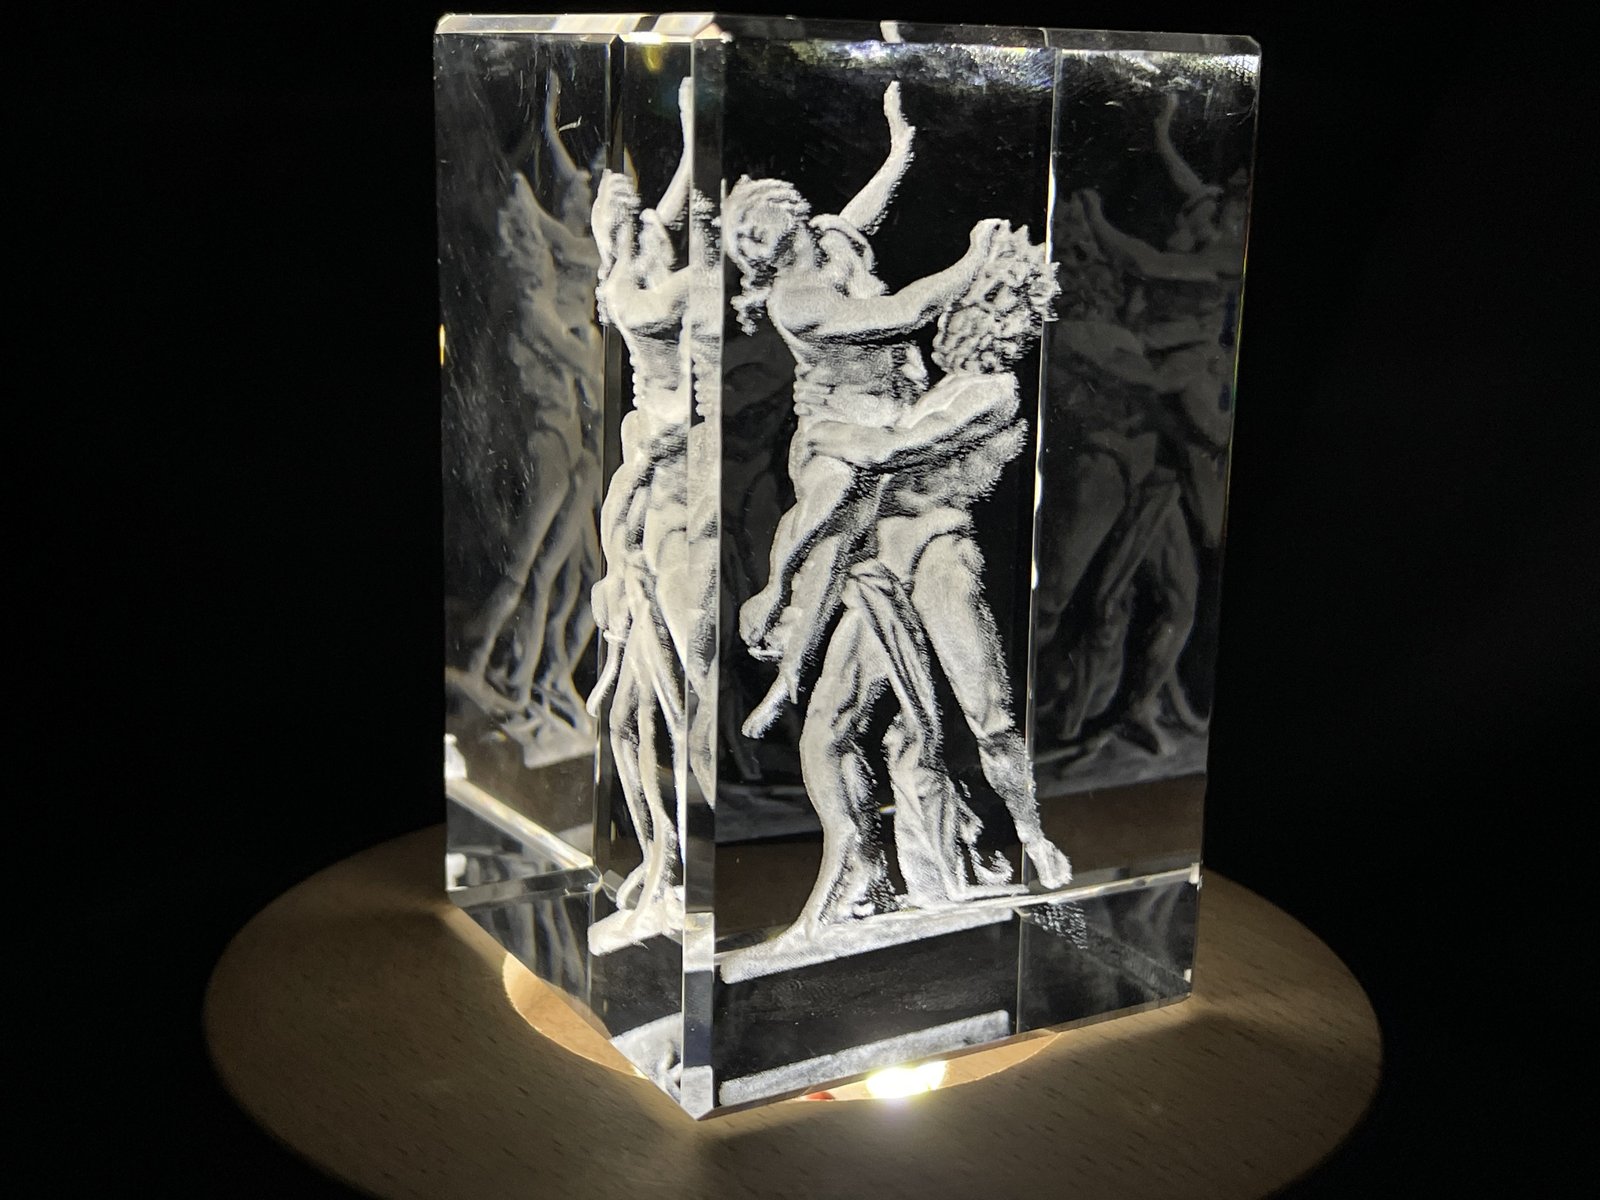 Hades 3D Engraved Crystal Keepsake/Gift/Decor/Collectible/Souvenir